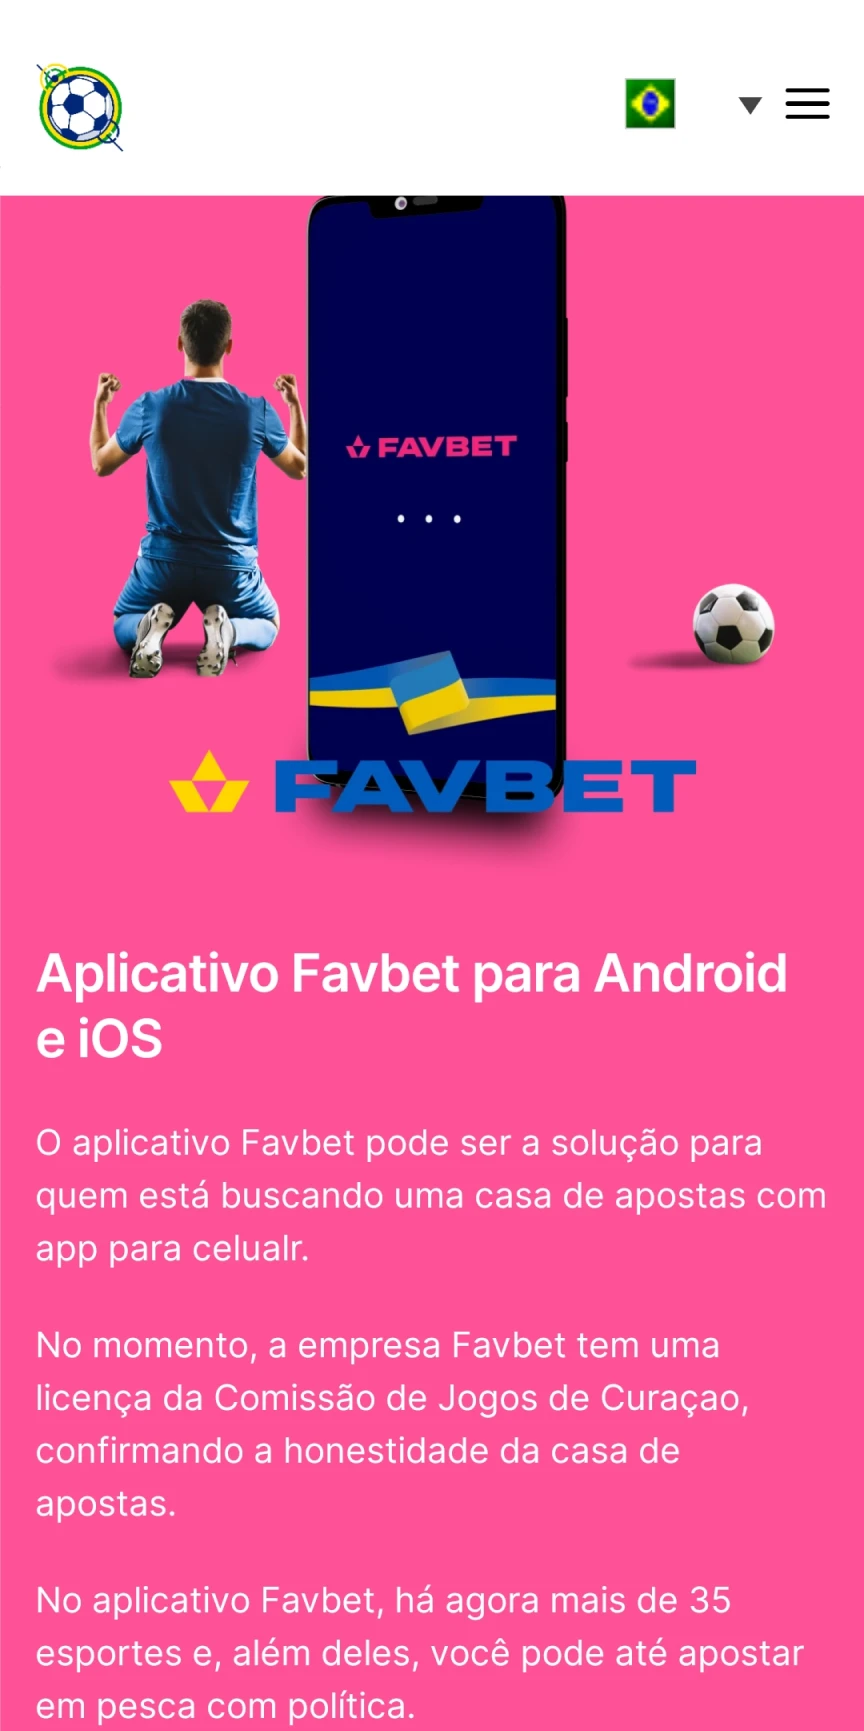 Visite a página inicial do Favbet para baixar aplicativos iOS.